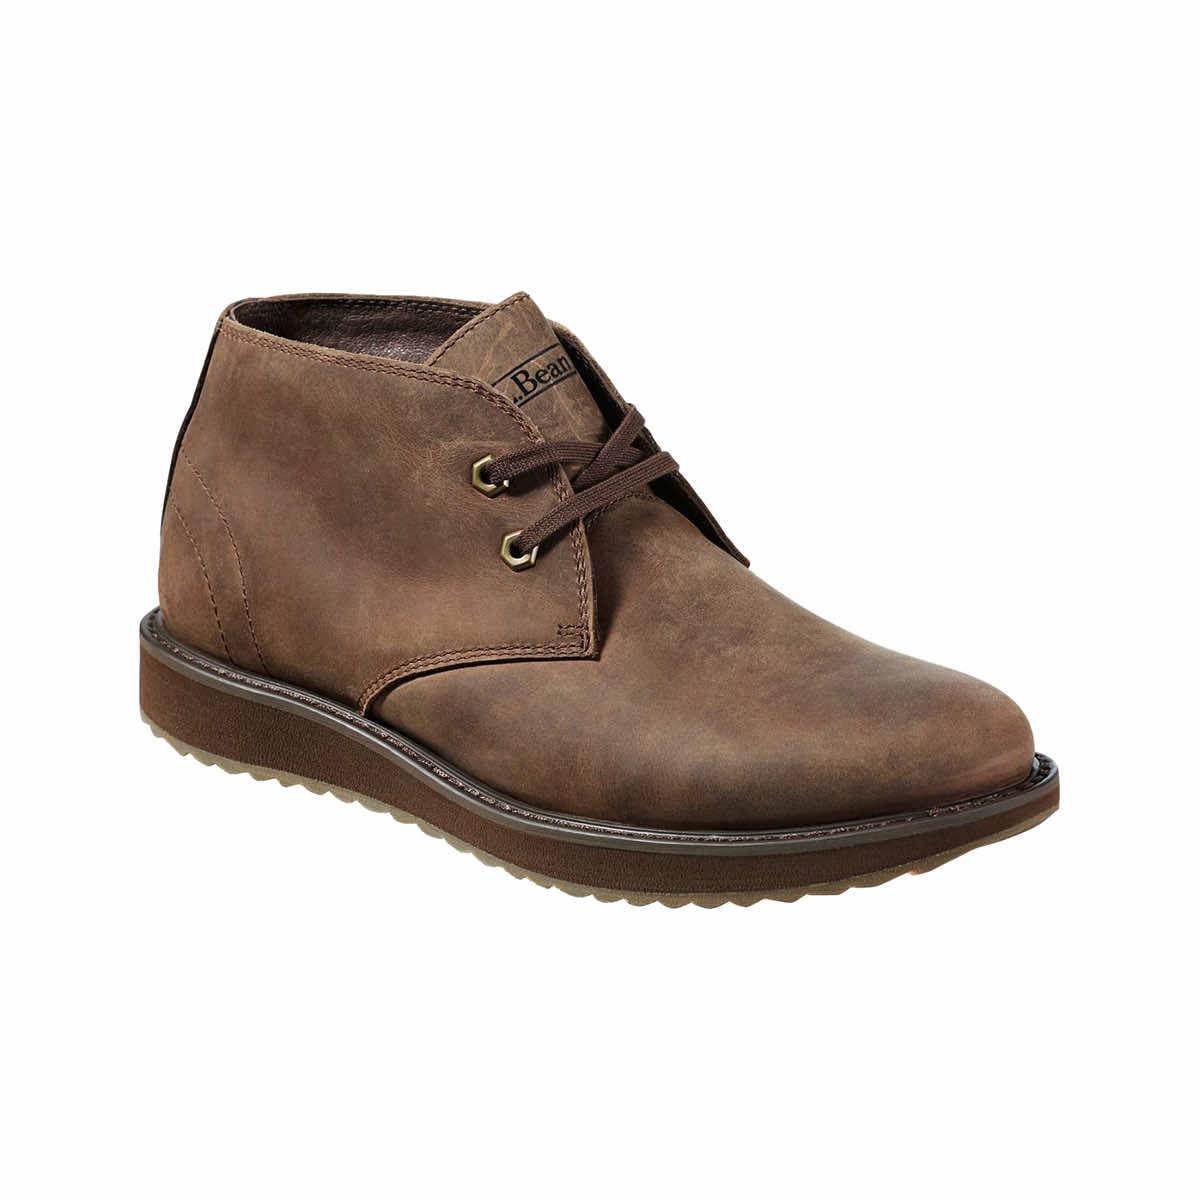 Men's Stonington Leather Chukka Boots